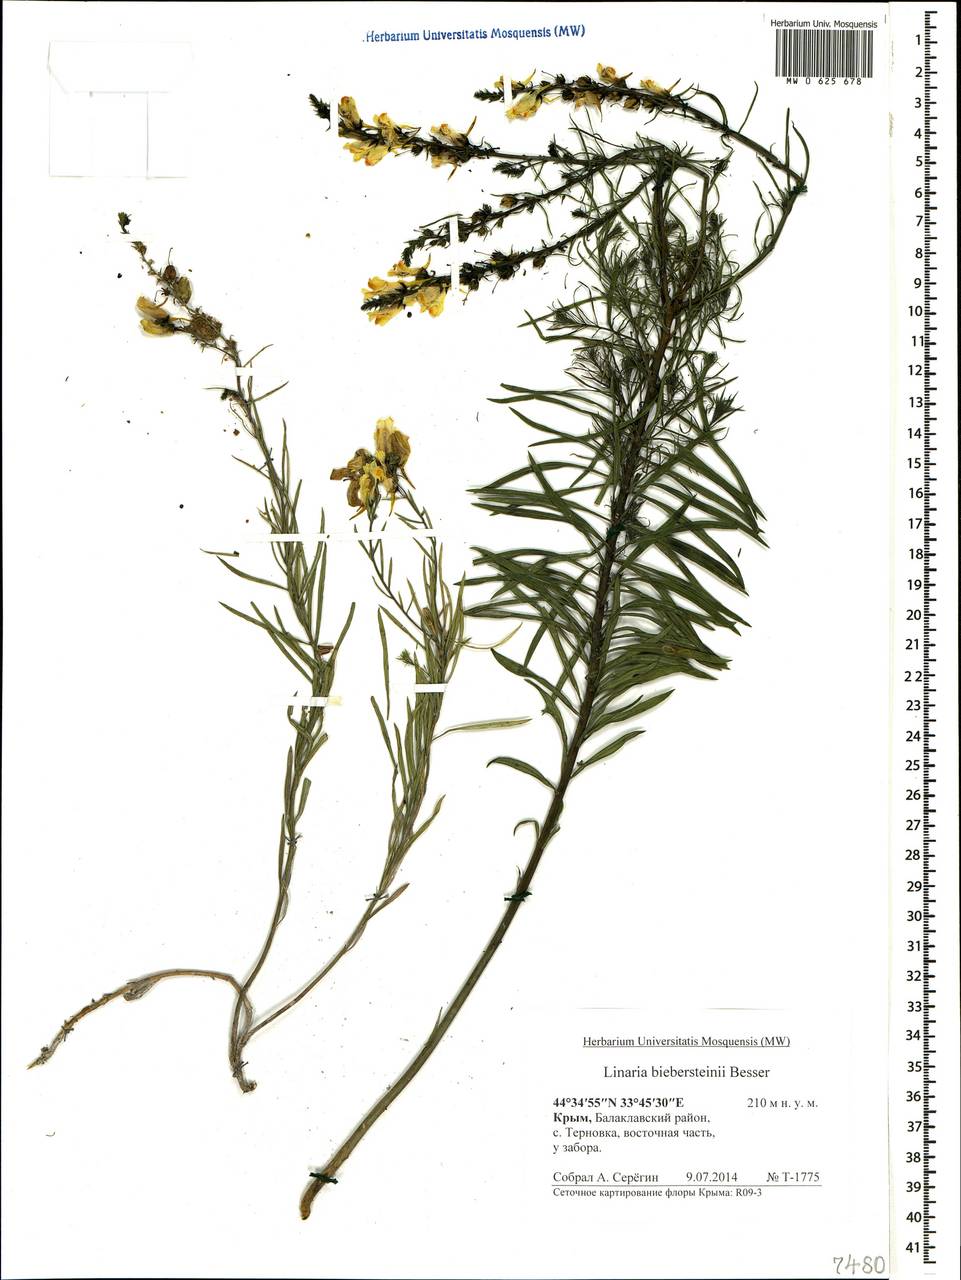 Linaria angustissima (Loisel.) Borbás, Crimea (KRYM) (Russia)